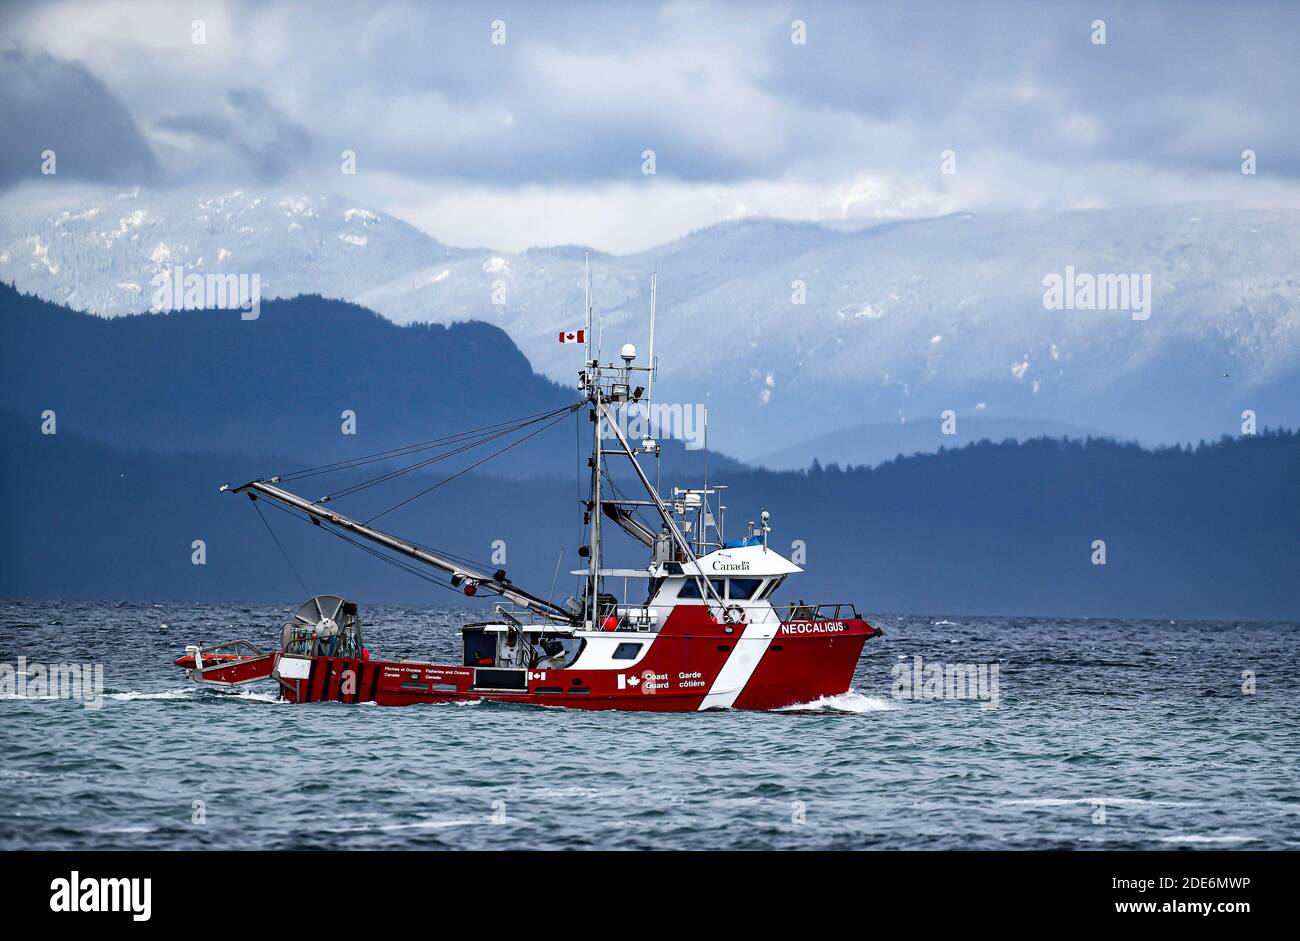 La Patrulla Pesquera Canadiense Neocaligus durante la temporada de arenque monitorea la actividad pesquera en el Mar Salish frente a la Isla de Vancouver. Foto de stock